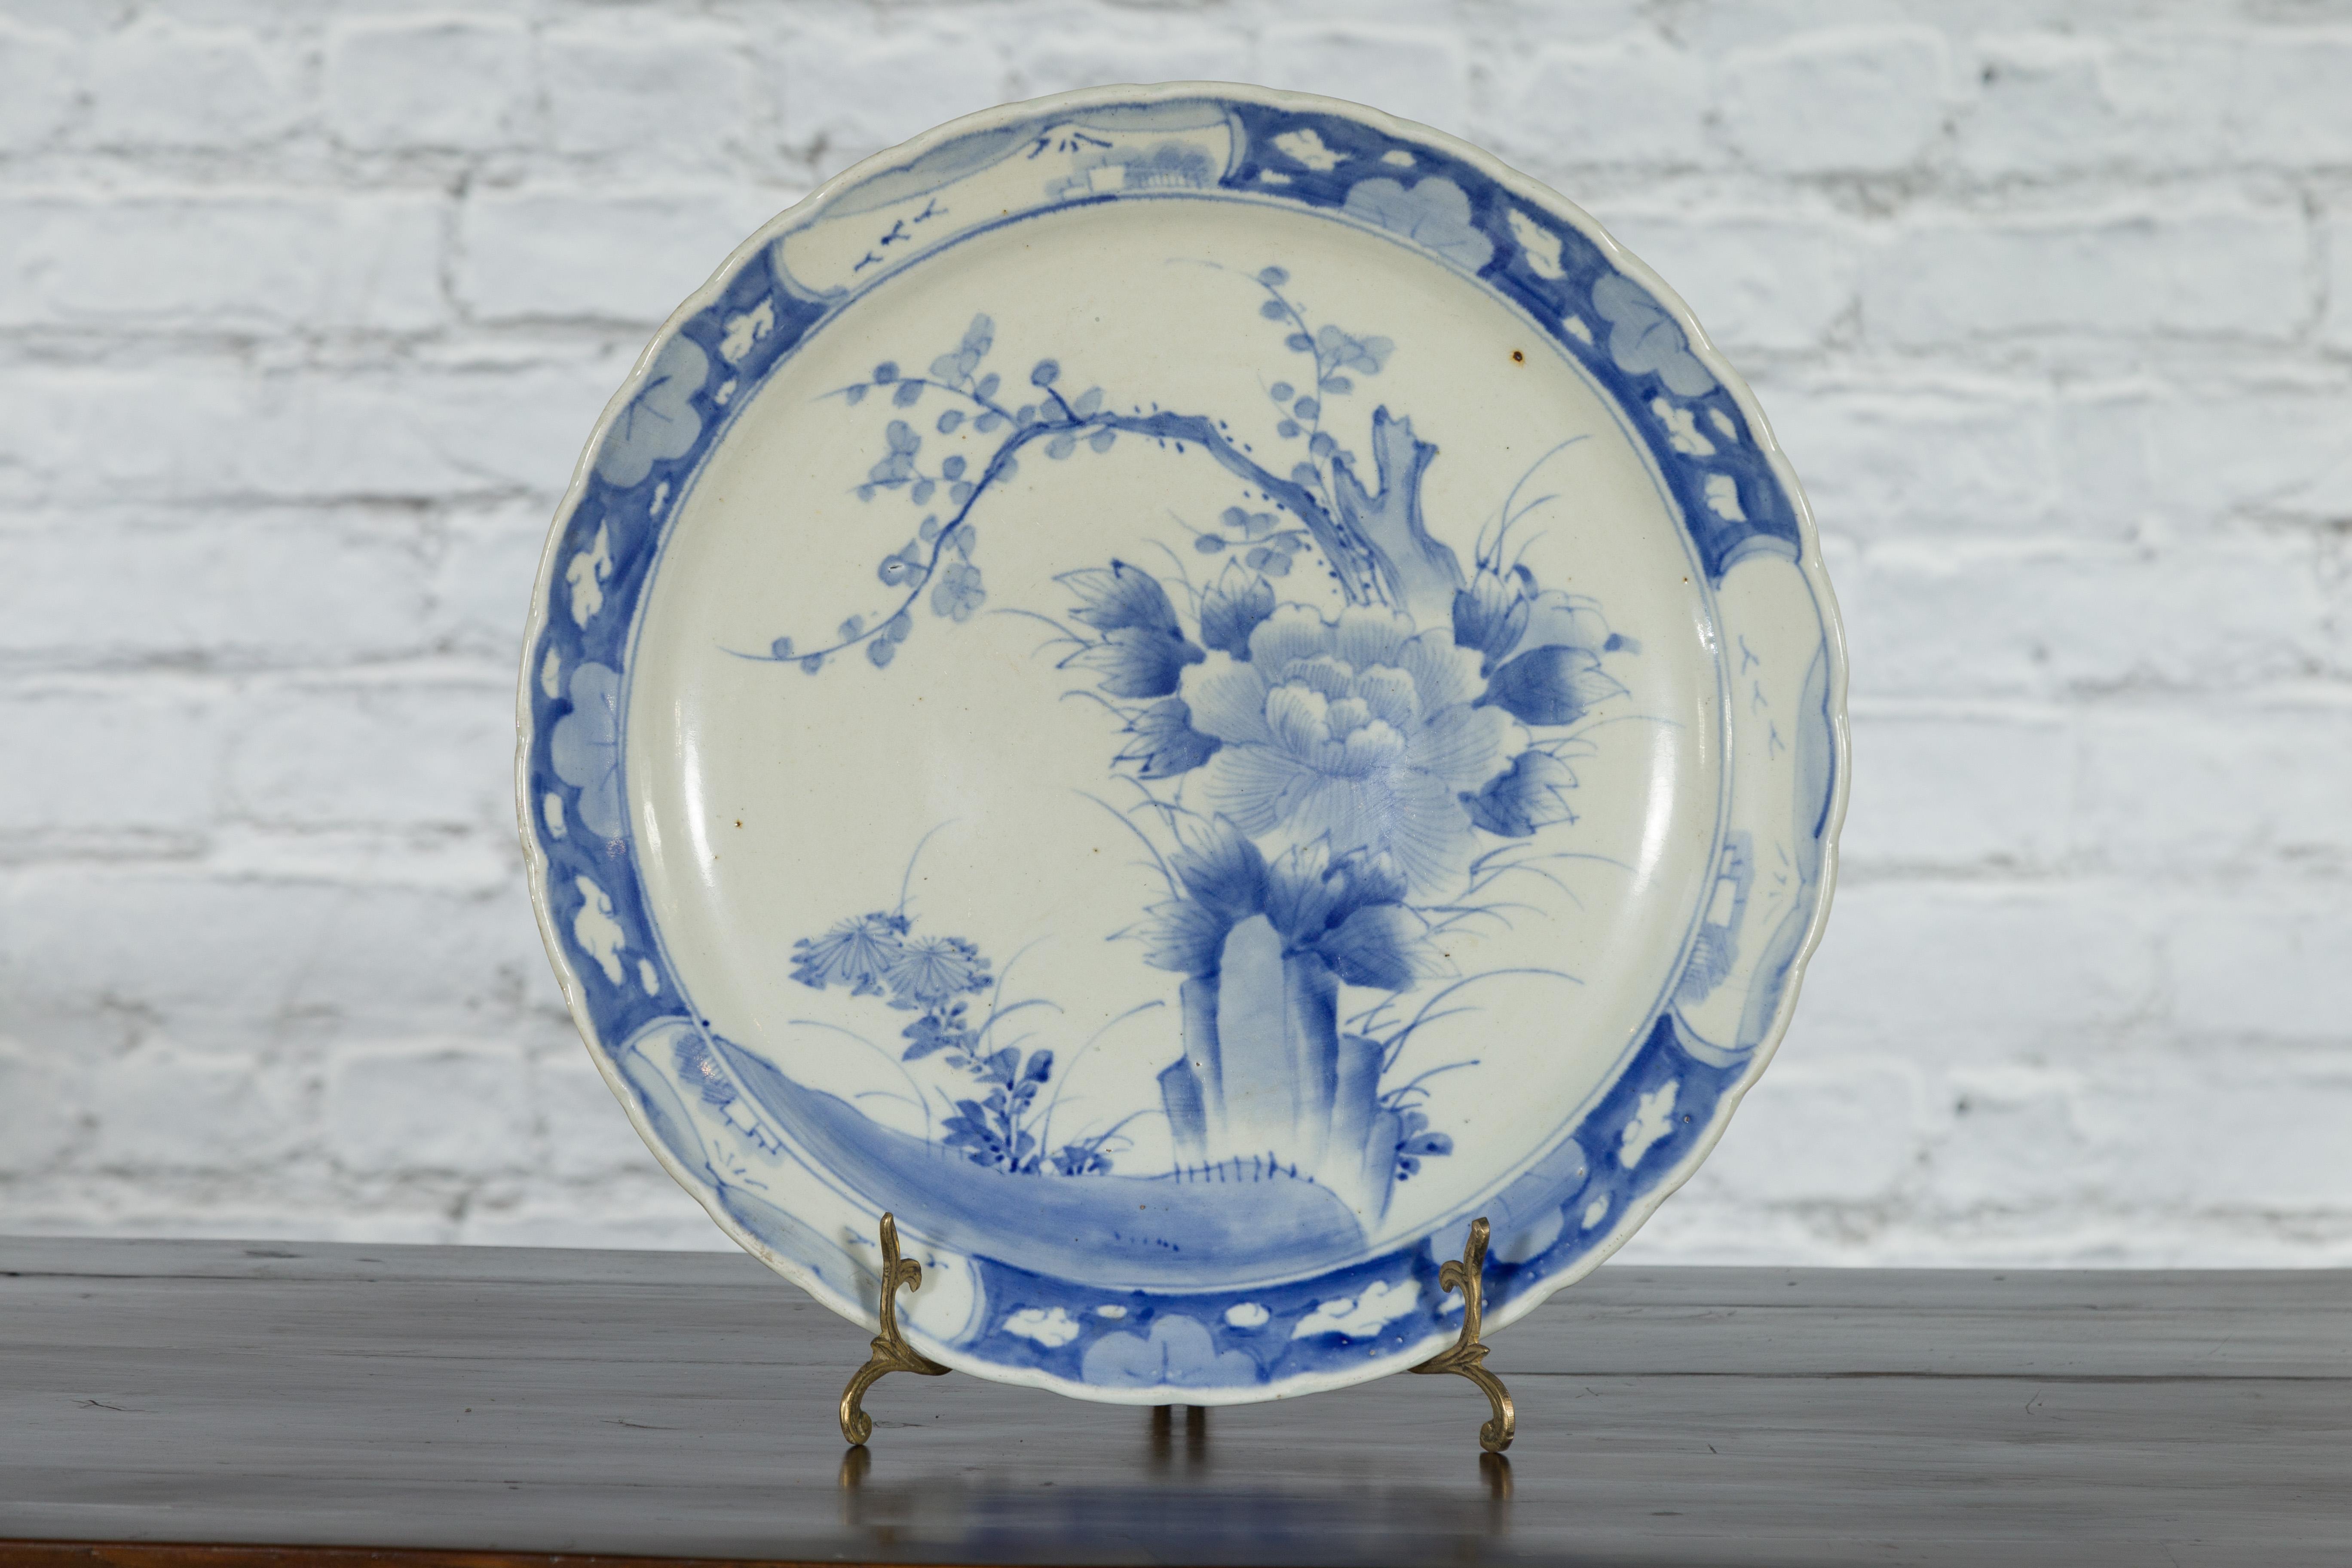 Ein japanischer Porzellanteller aus dem 19. Jahrhundert mit handgemaltem blau-weißem Baum-, Laub- und Felsendekor. Dieser Porzellanteller, der im 19. Jahrhundert in Japan hergestellt wurde, zeigt ein zartes blau-weißes Dekor, das eine kunstvolle,